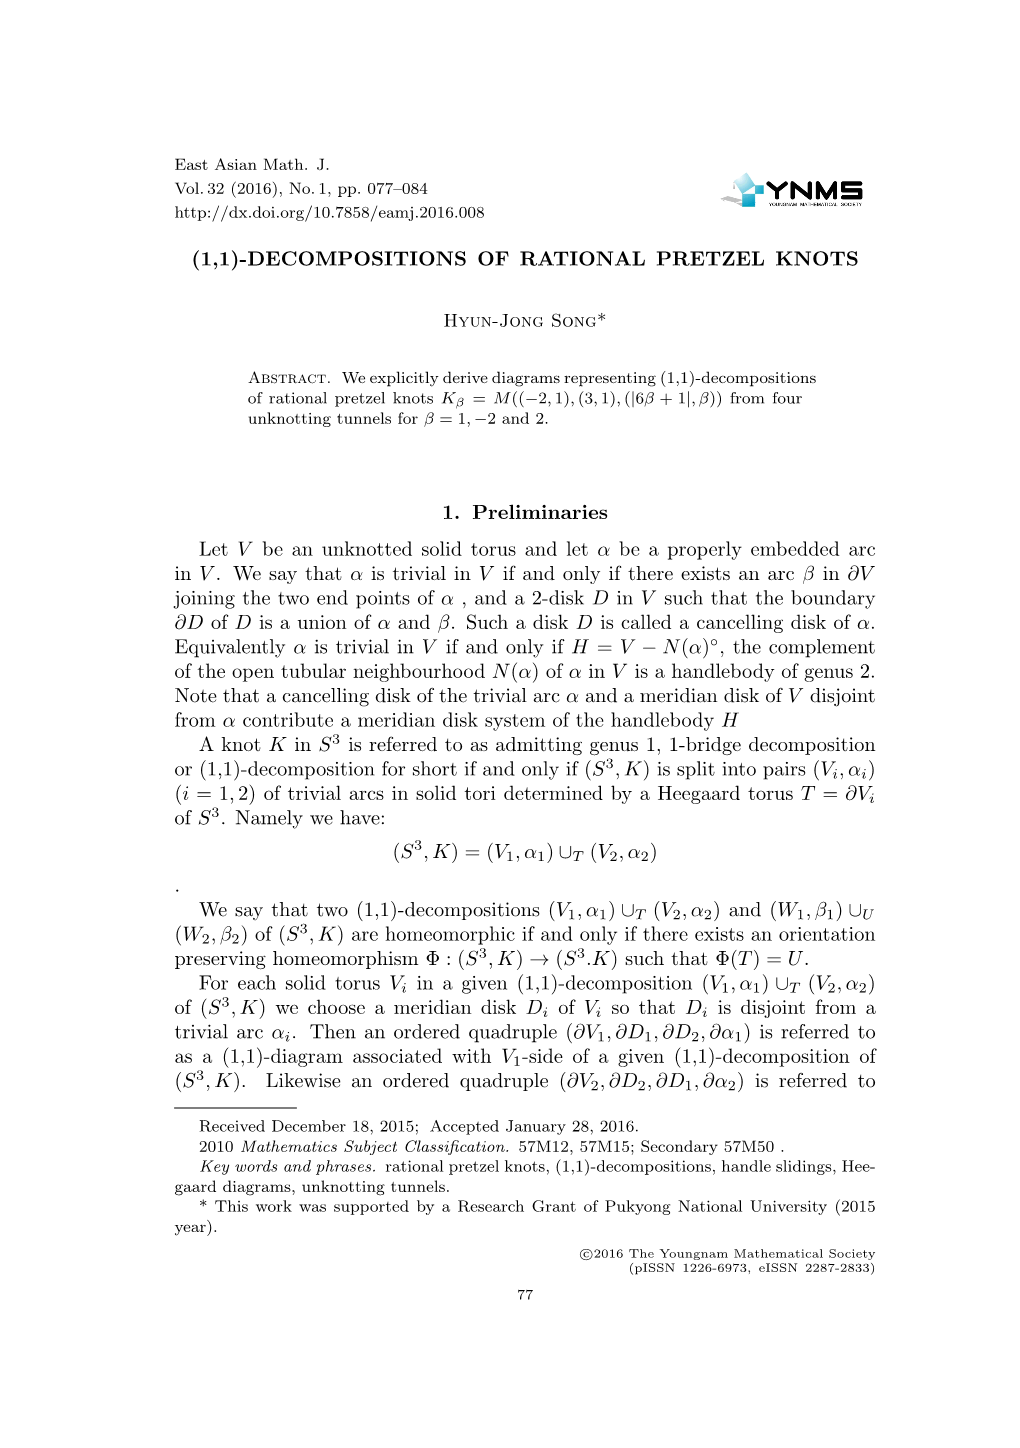 (1,1)-Decompositions of Rational Pretzel Knots